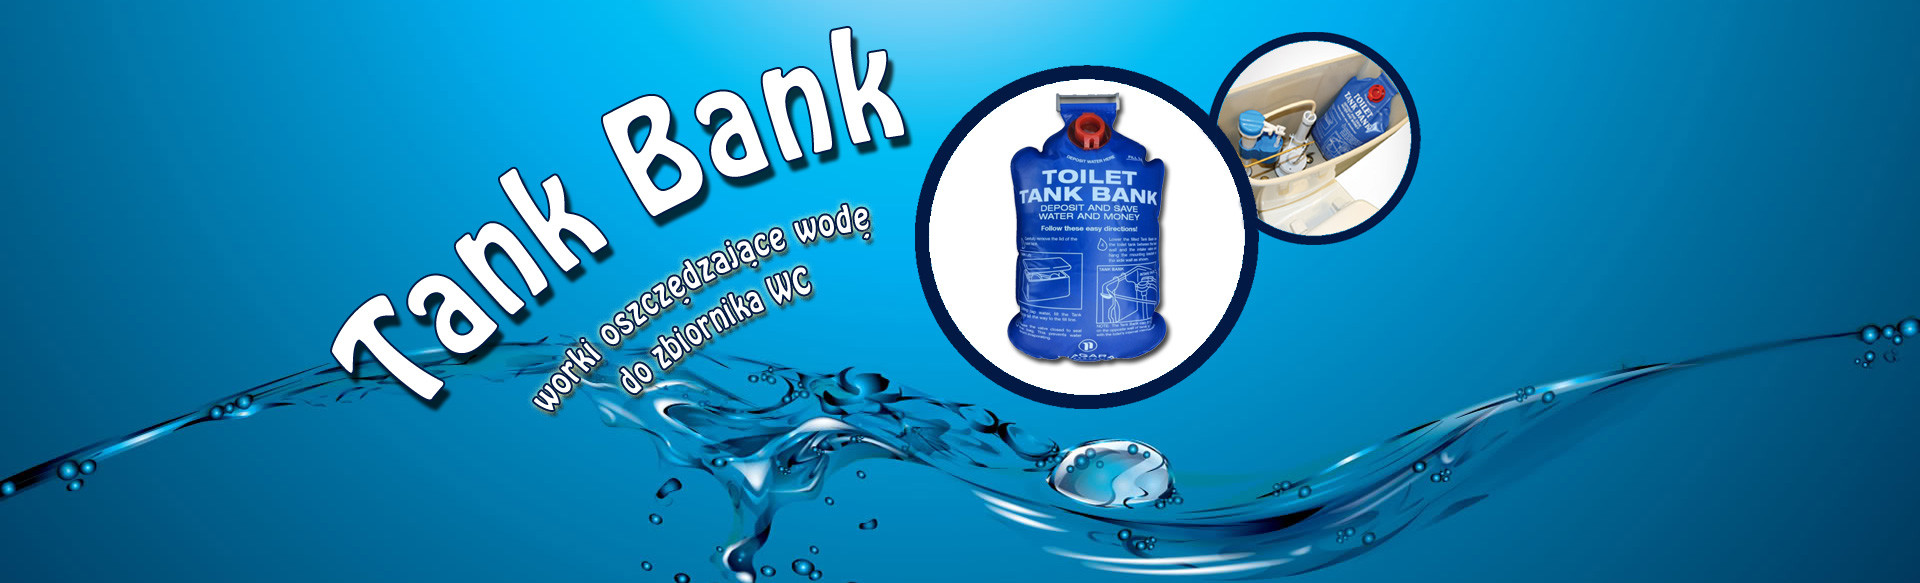 worek Tank Bank